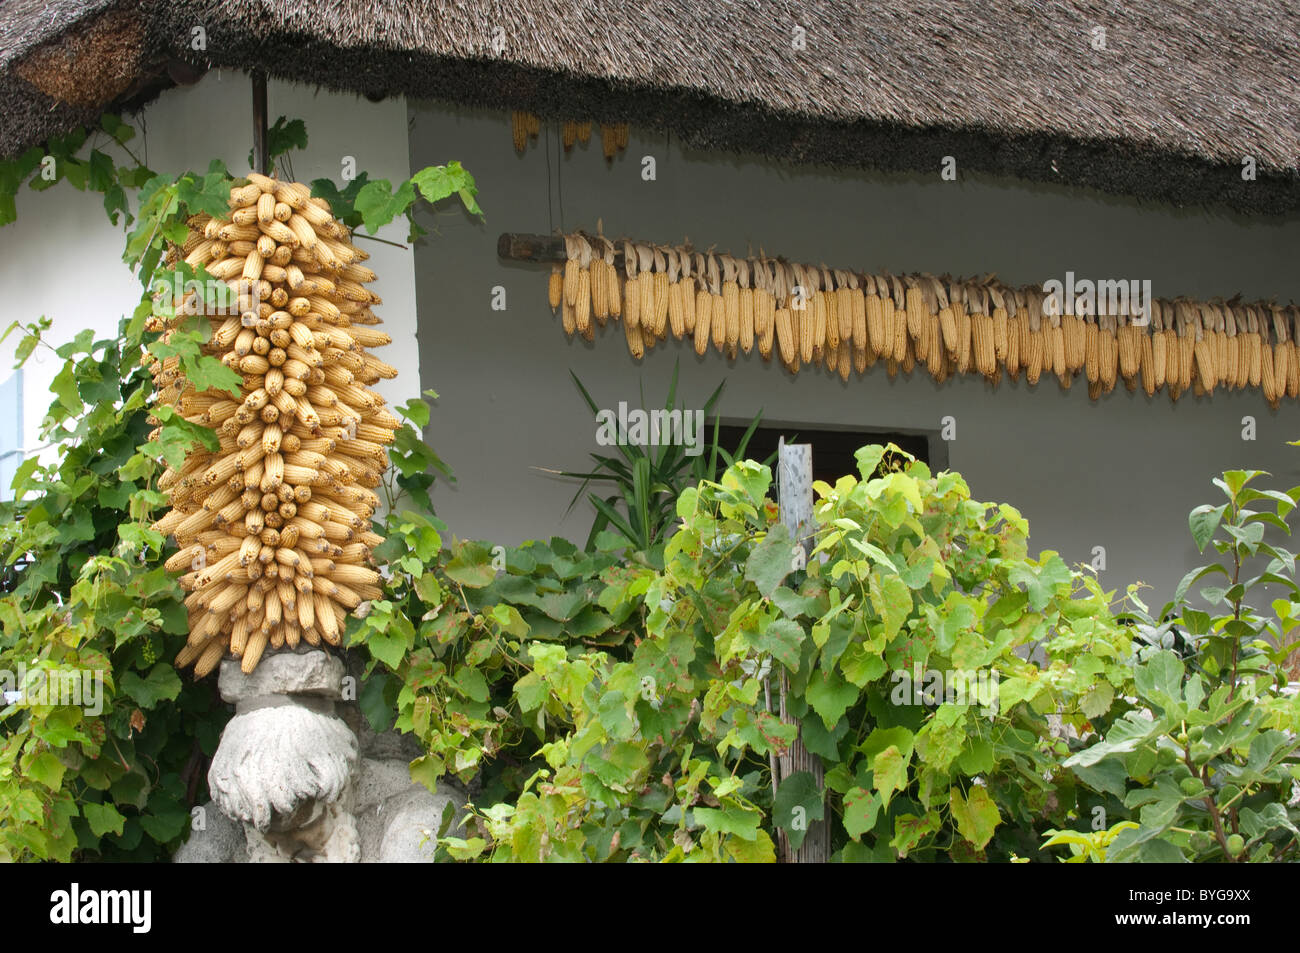 Le maïs, le maïs (Zea mays). Épis de maïs accrochés pour le séchage sous les combles d'un pavillon, Podersdorf, le lac de Neusiedl, l'Autriche. Banque D'Images